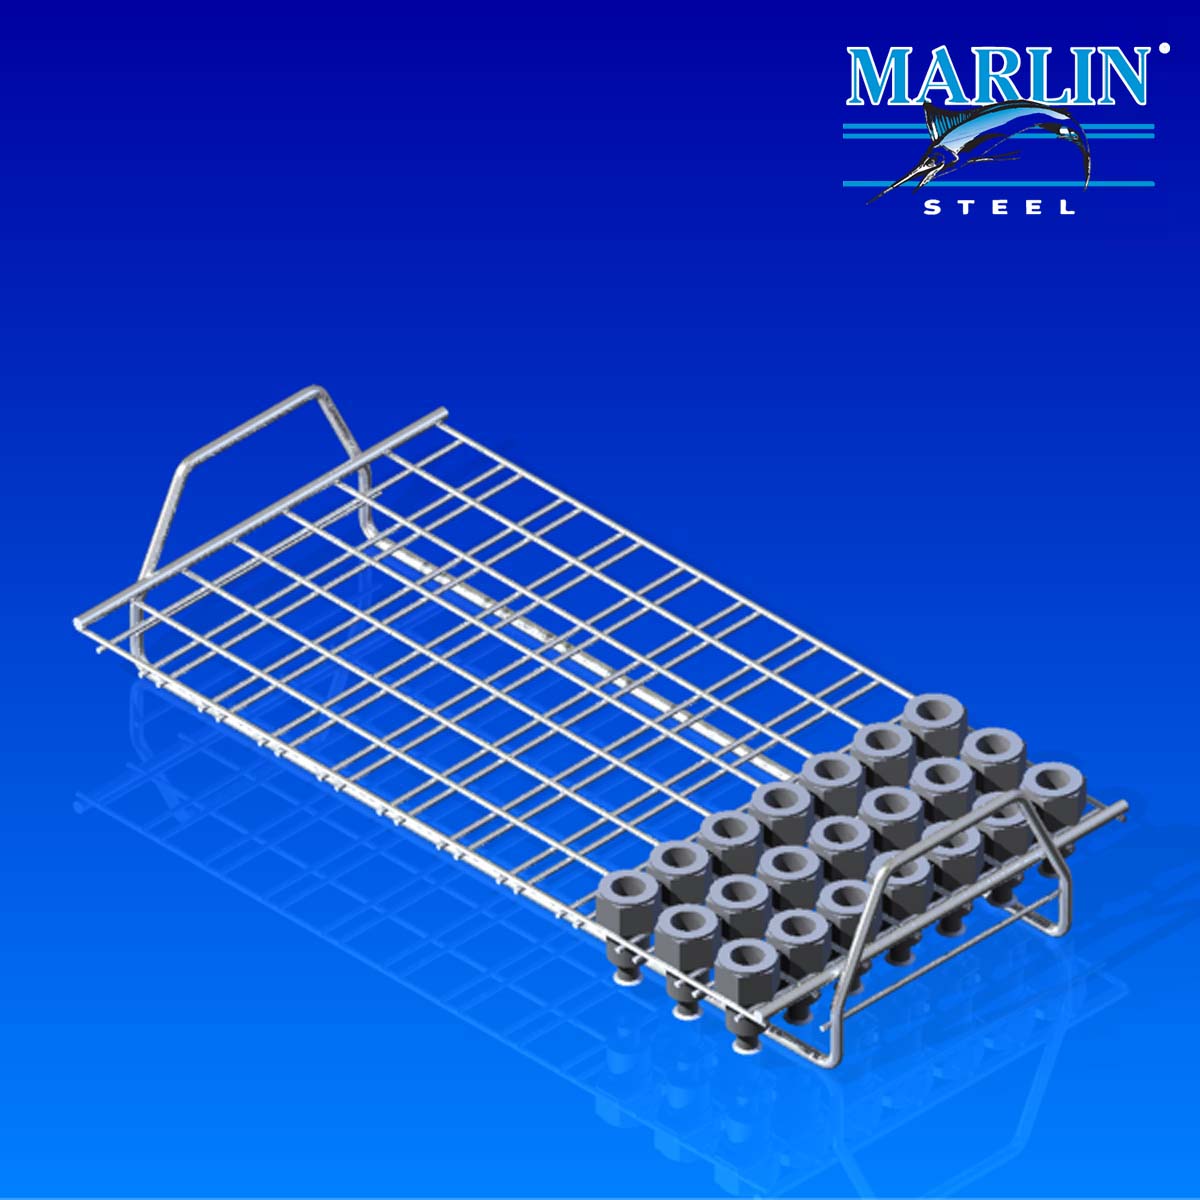 Marlin Steel Wire Material Handling Basket 713001